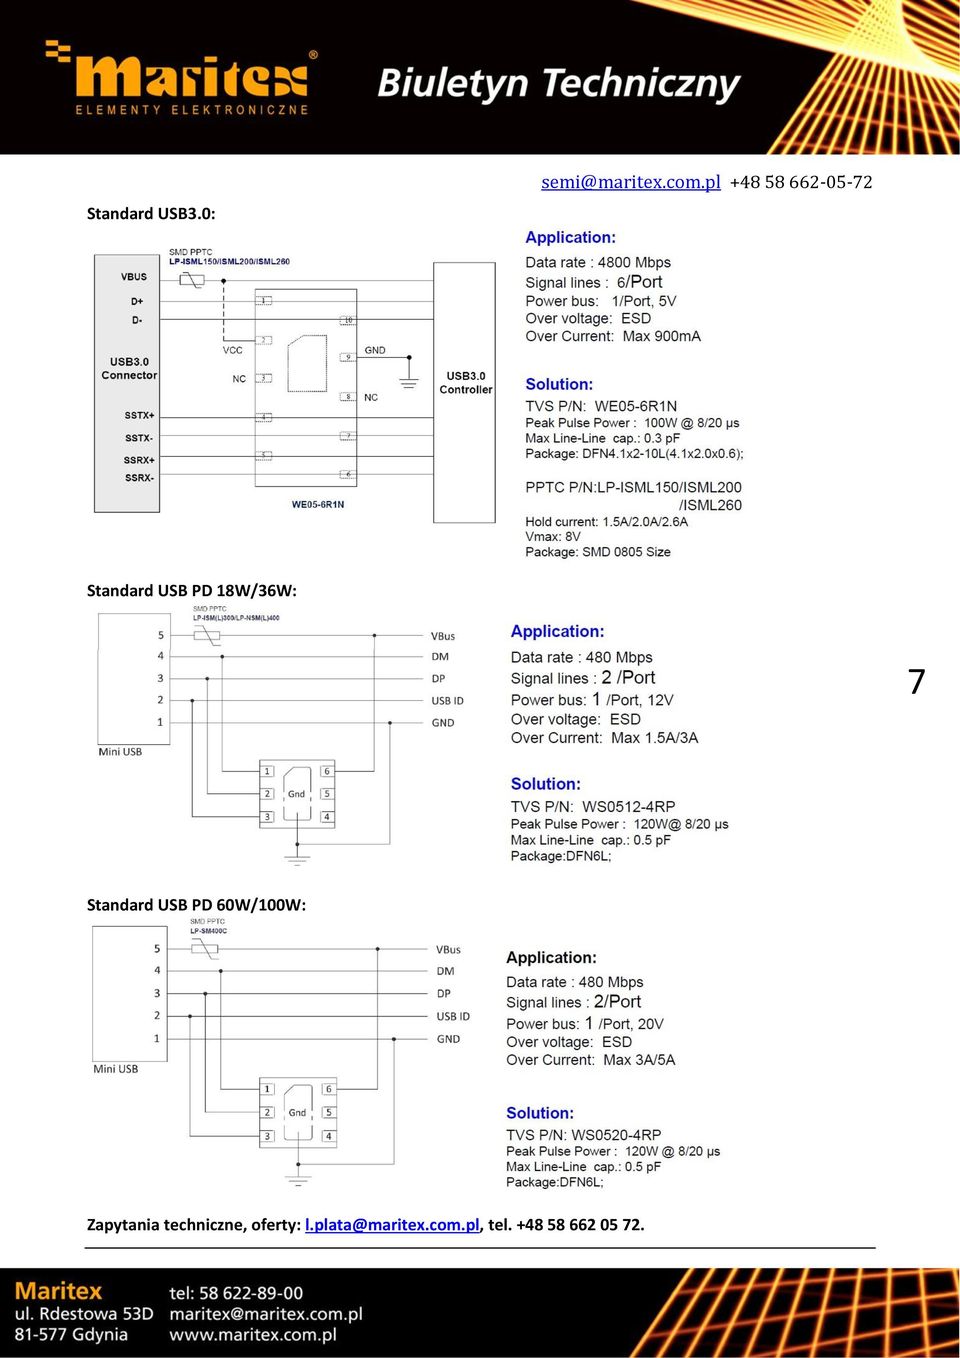 7 Standard USB PD 60W/100W: Zapytania